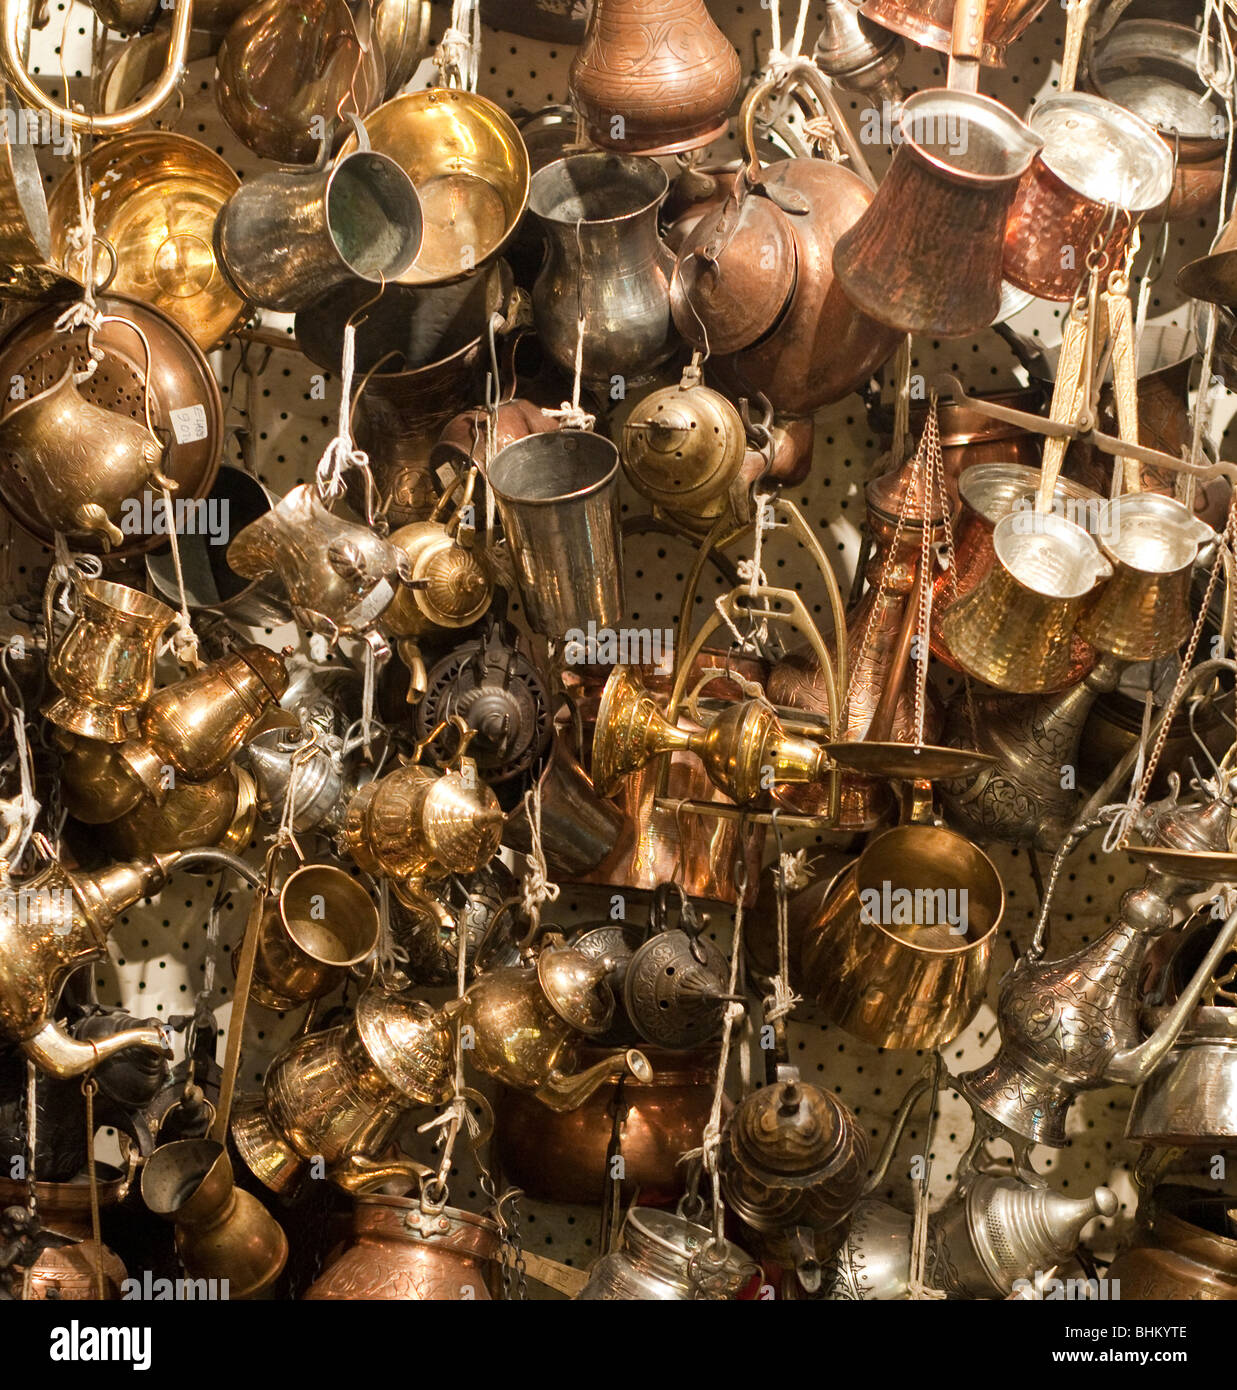 Copper and brass kitchenware in a bazaar in Gazientep, Turkey Stock Photo